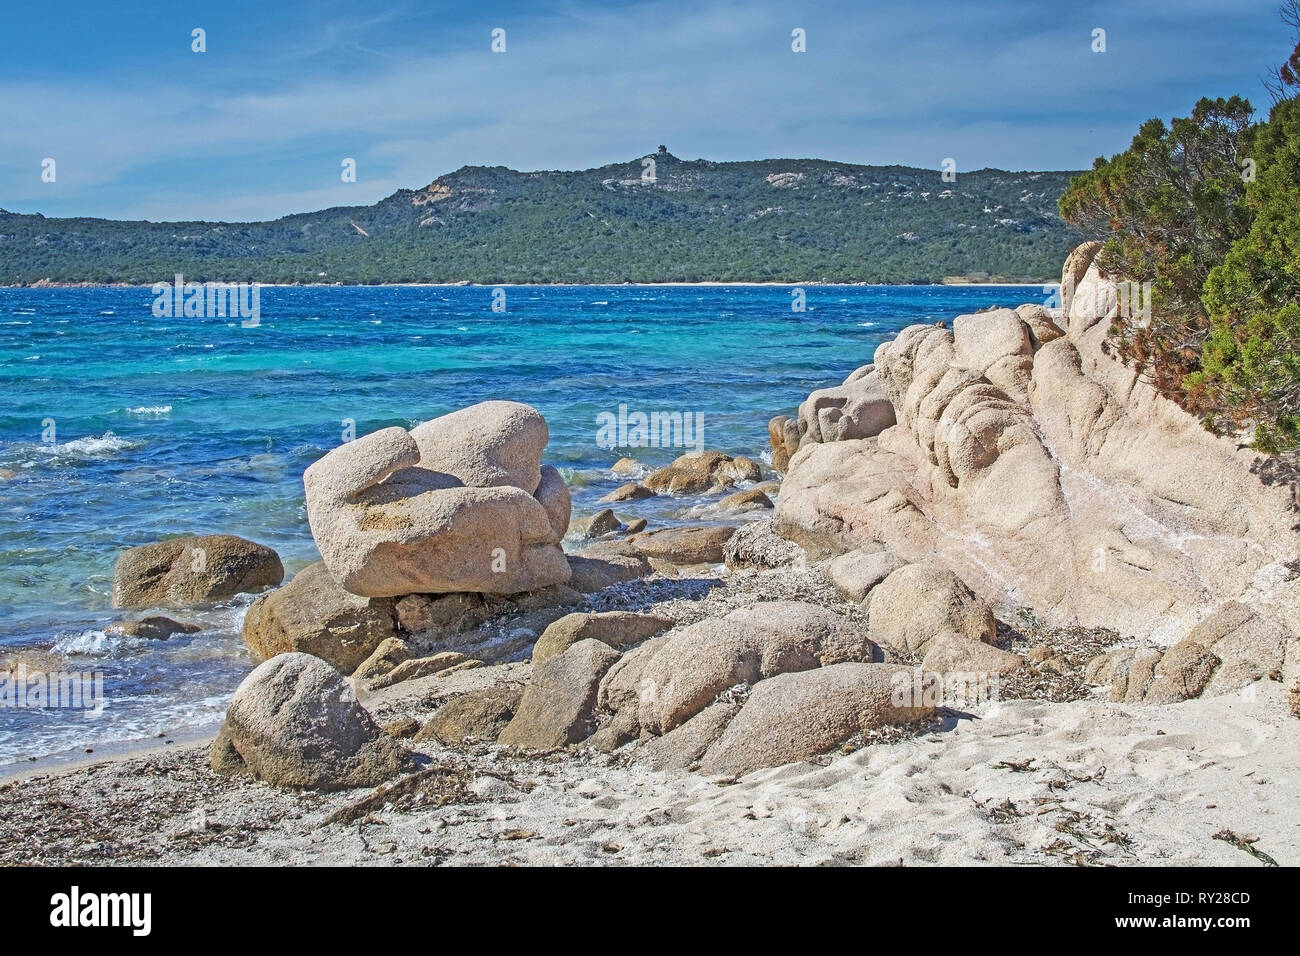 Verde acqua e divertente di roccia di granito forme su una spiaggia in Costa Smeralda, Sardegna, Italia nel mese di marzo. Foto Stock